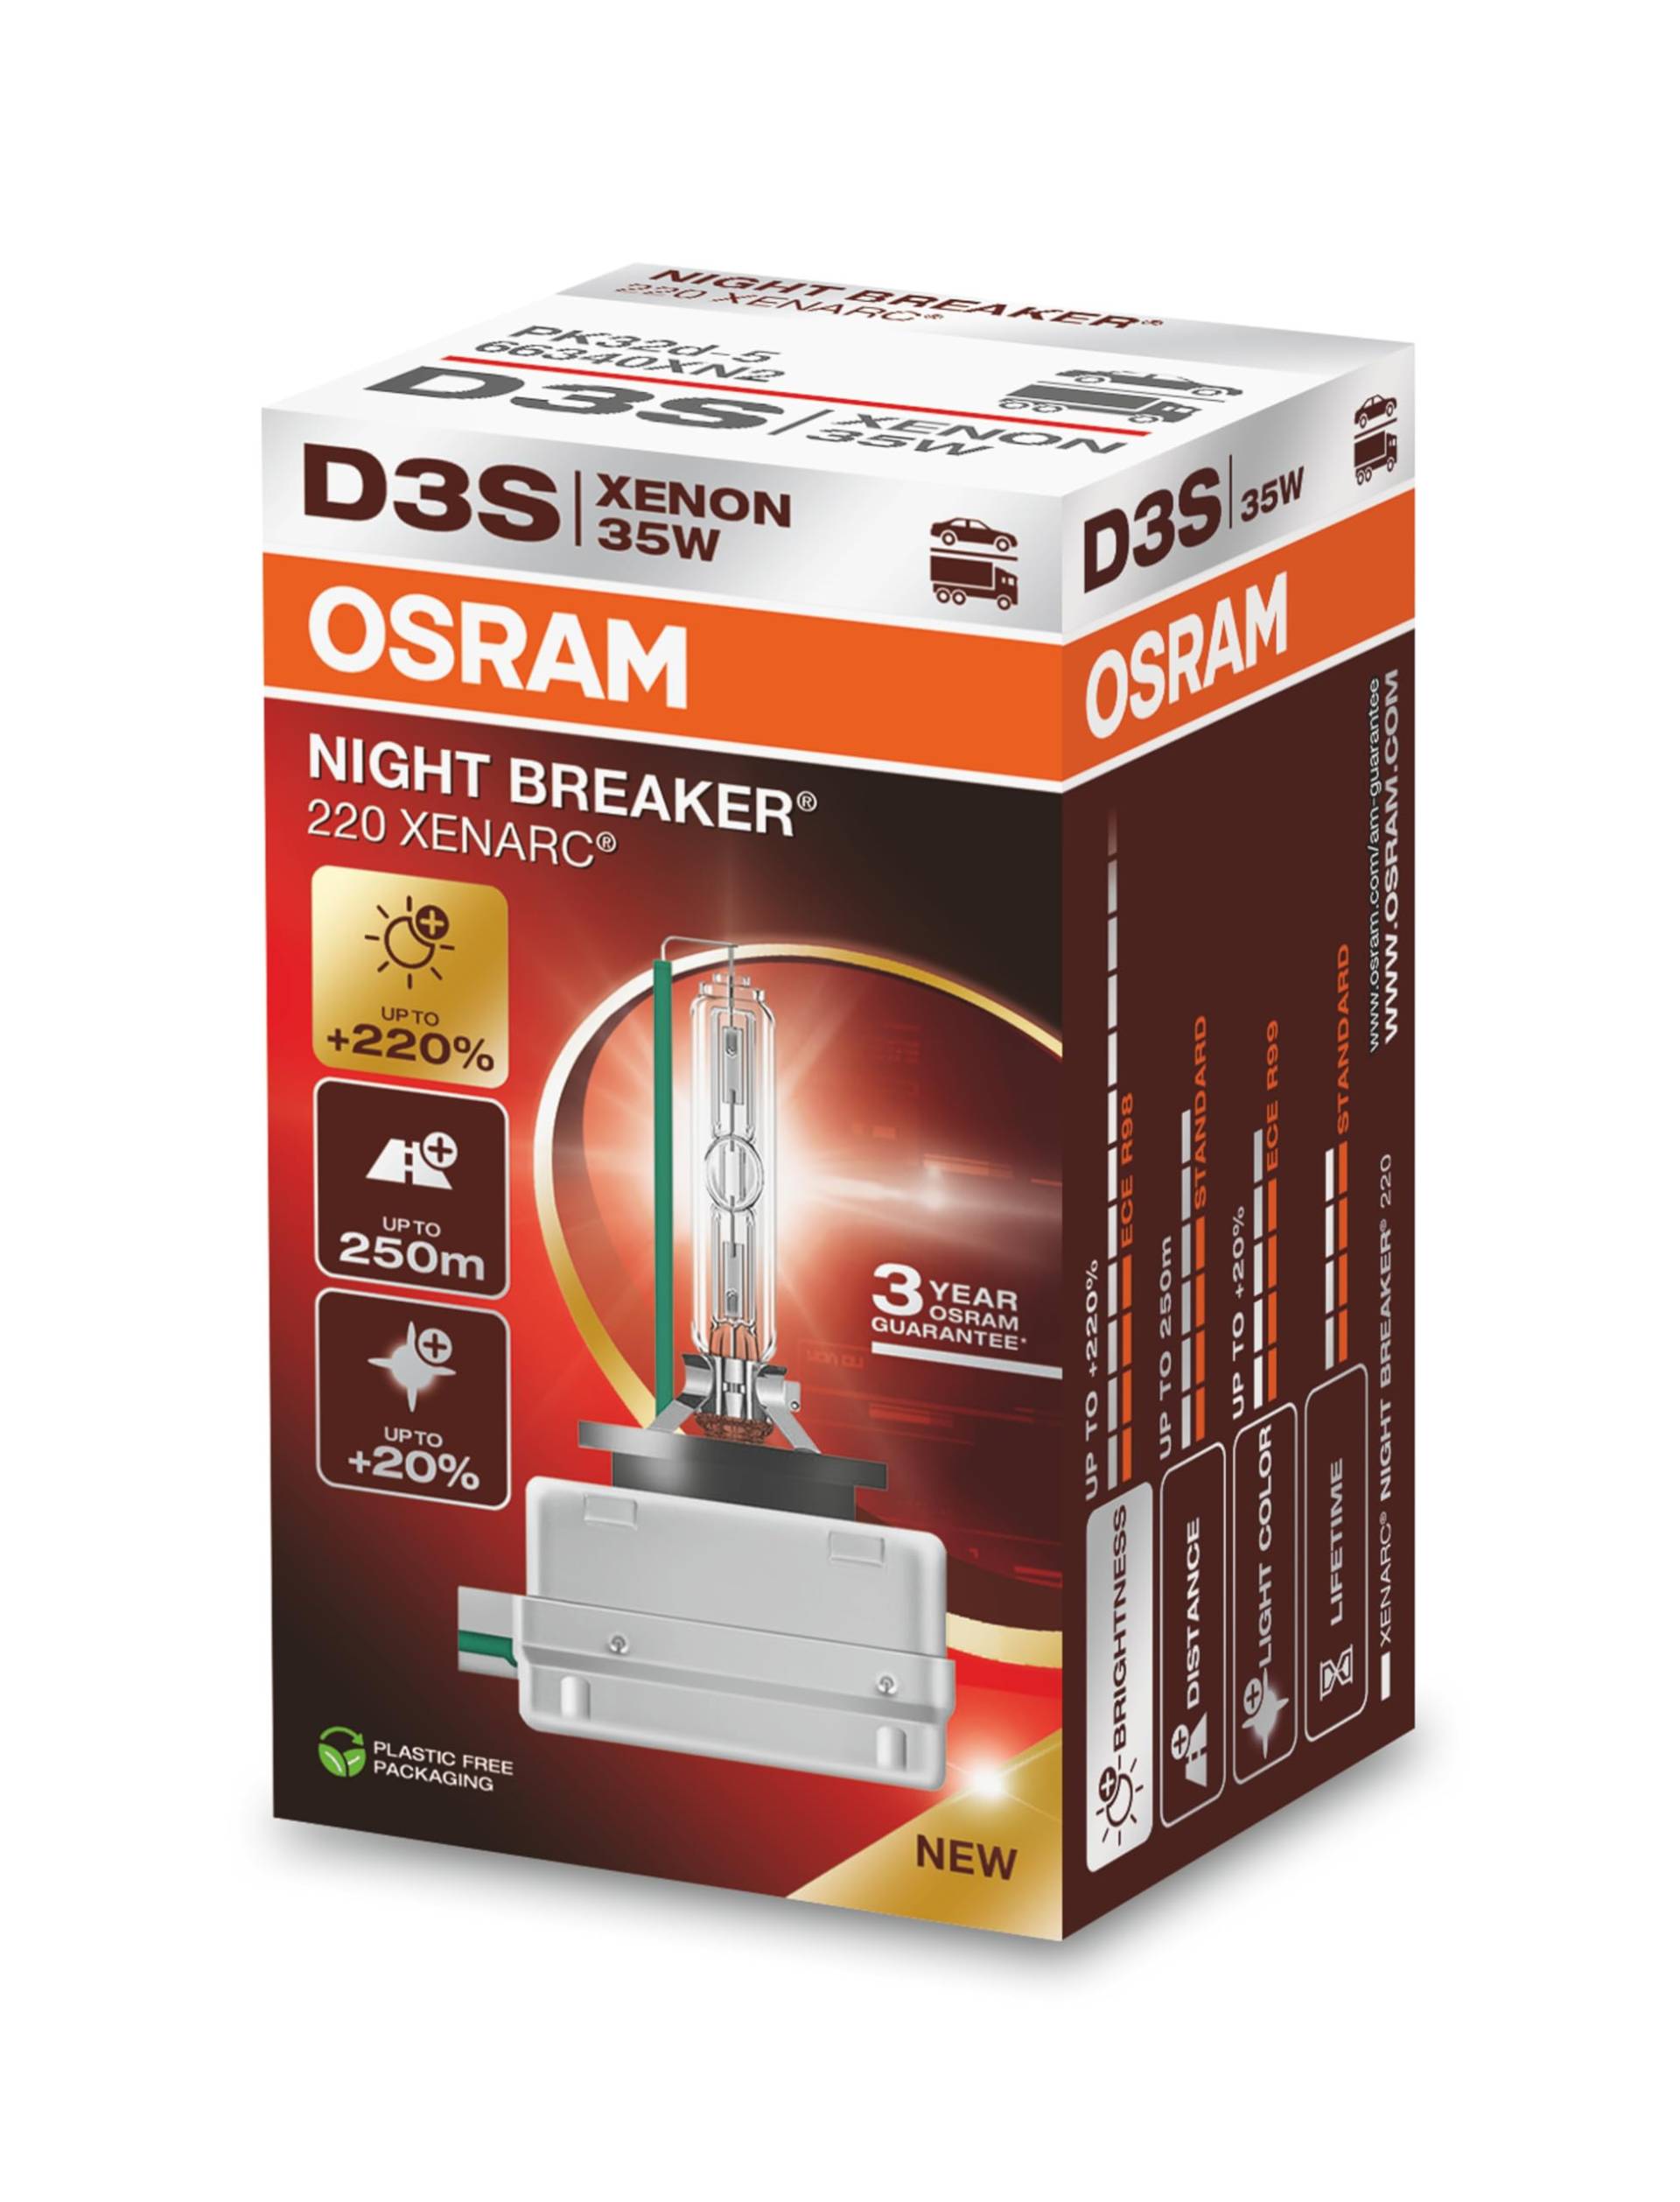 OSRAM XENARC NIGHT BREAKER 220, D3S, 220% mehr Helligkeit, Xenon-Scheinwerferlampe, 66340XN2, Faltschachtel (1 Lampe) von Osram